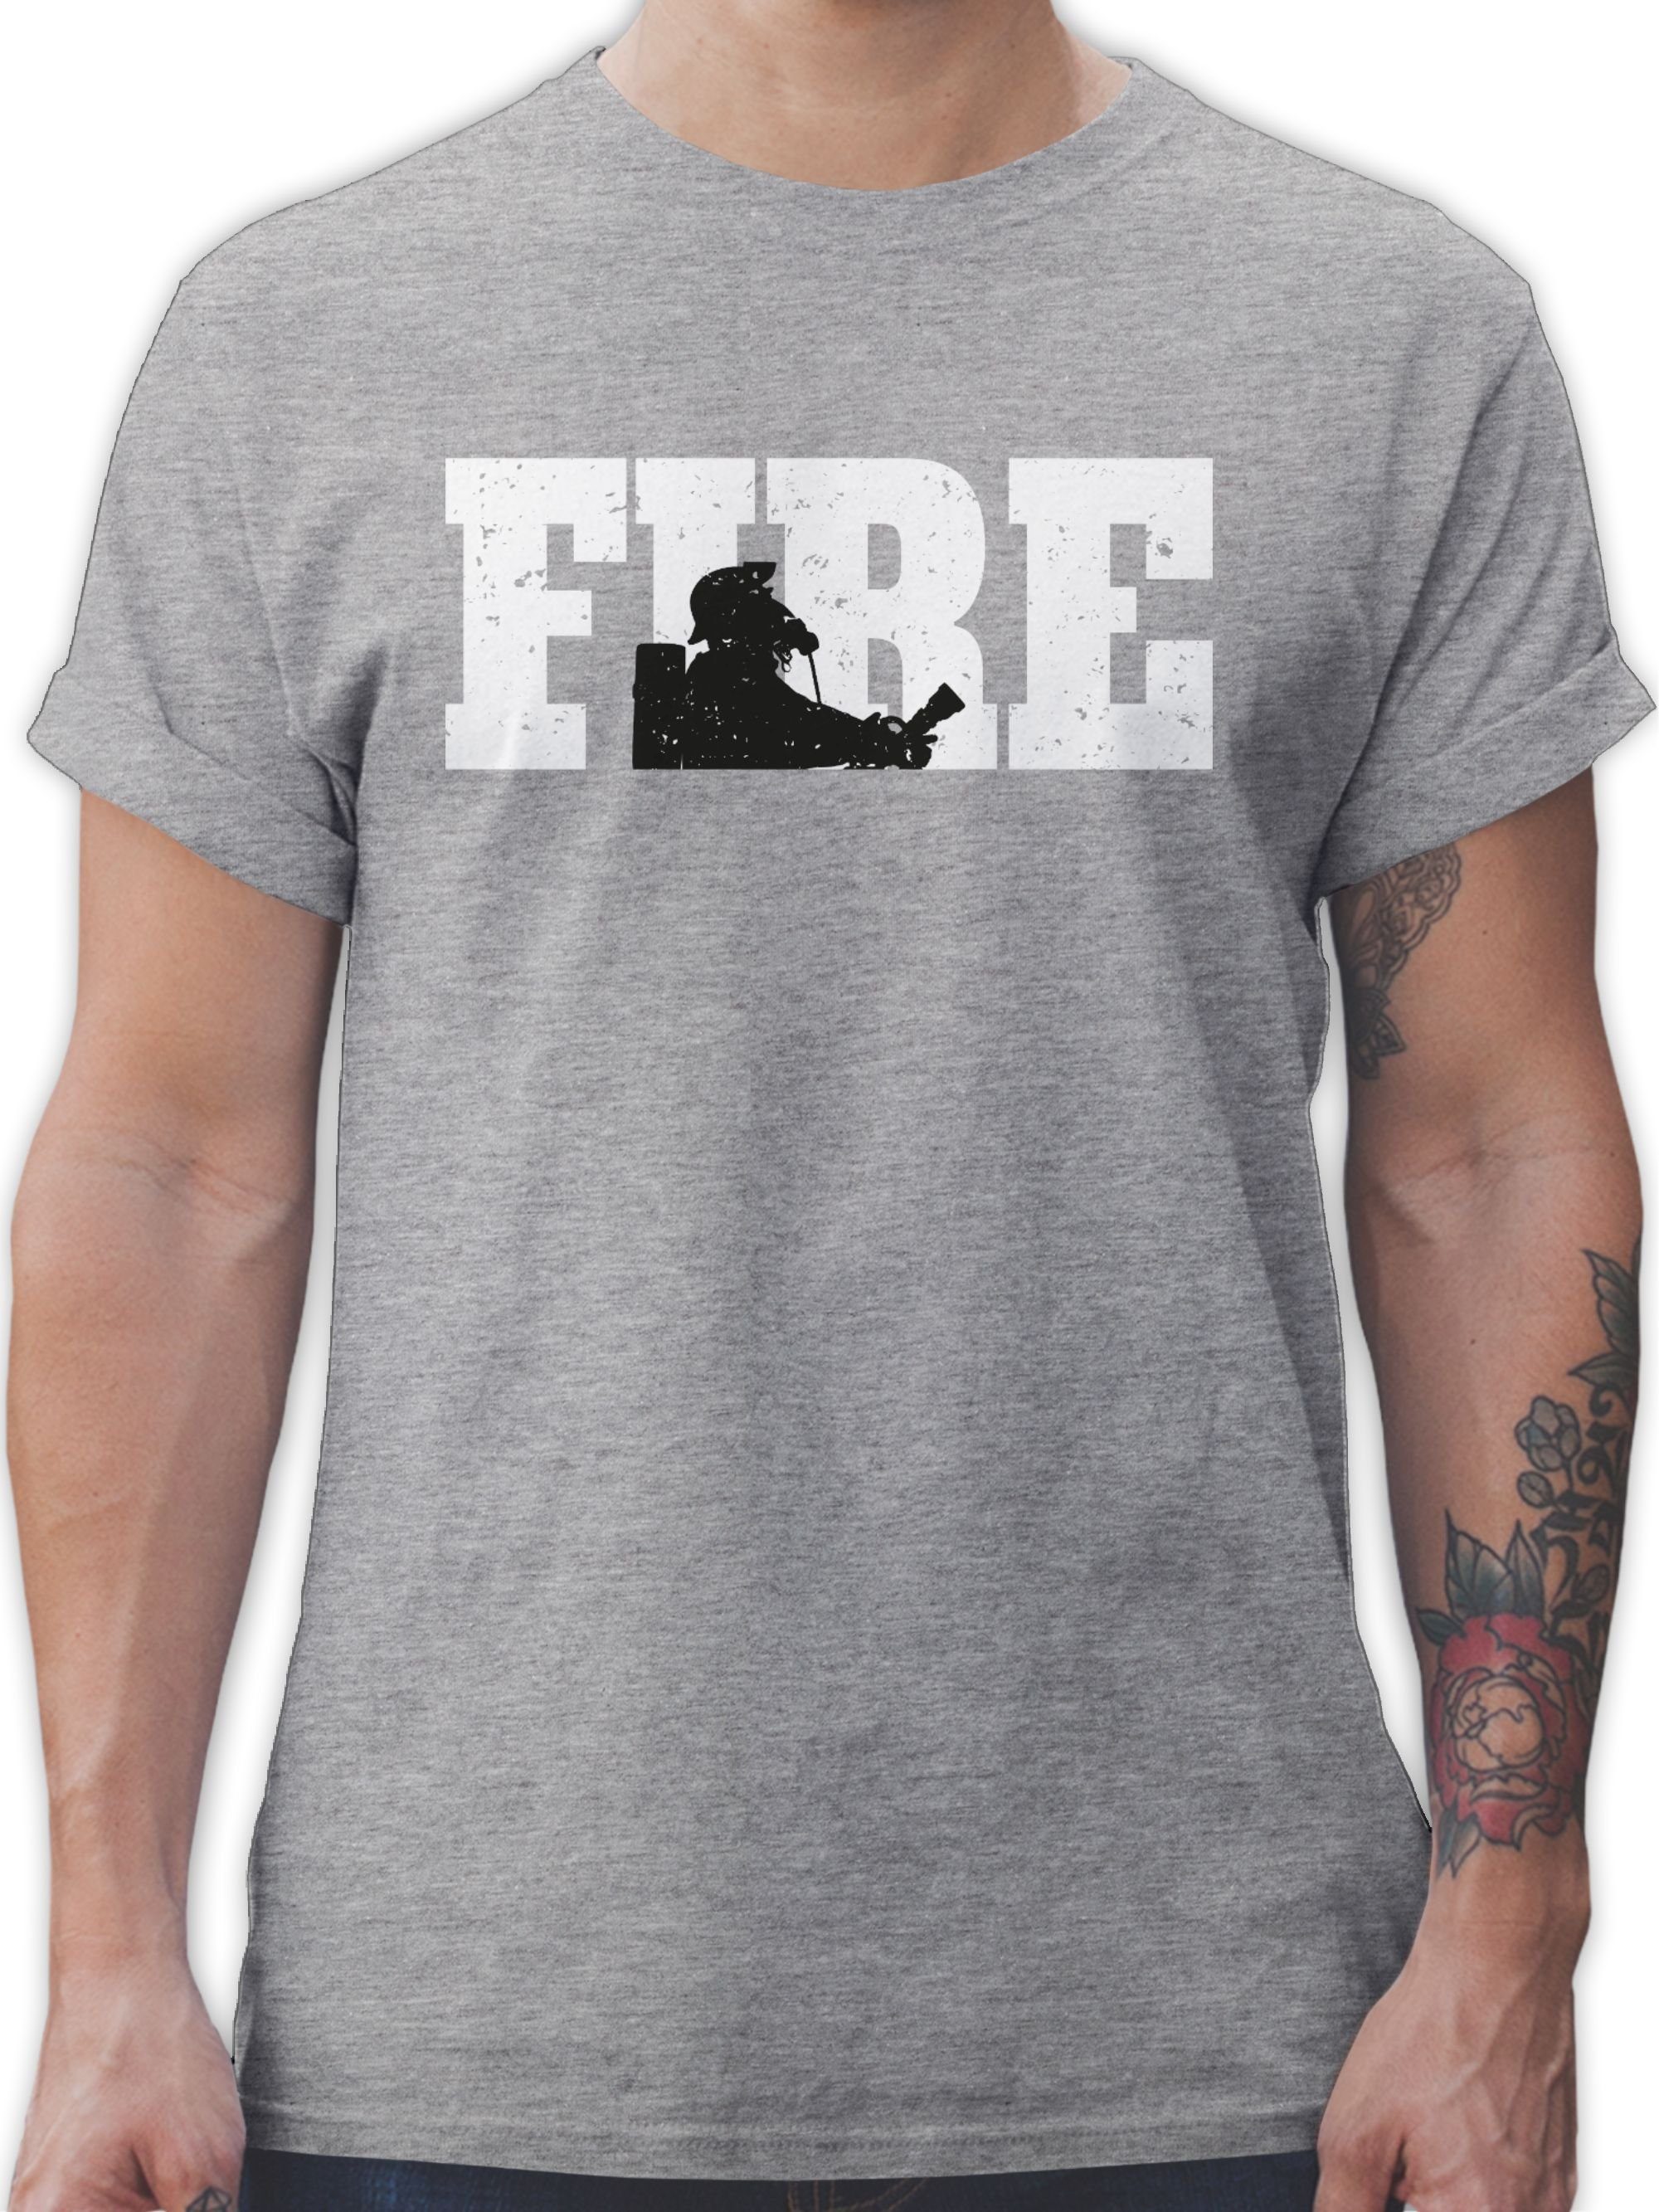 Shirtracer T-Shirt Fire Feuerwehr 3 Grau meliert